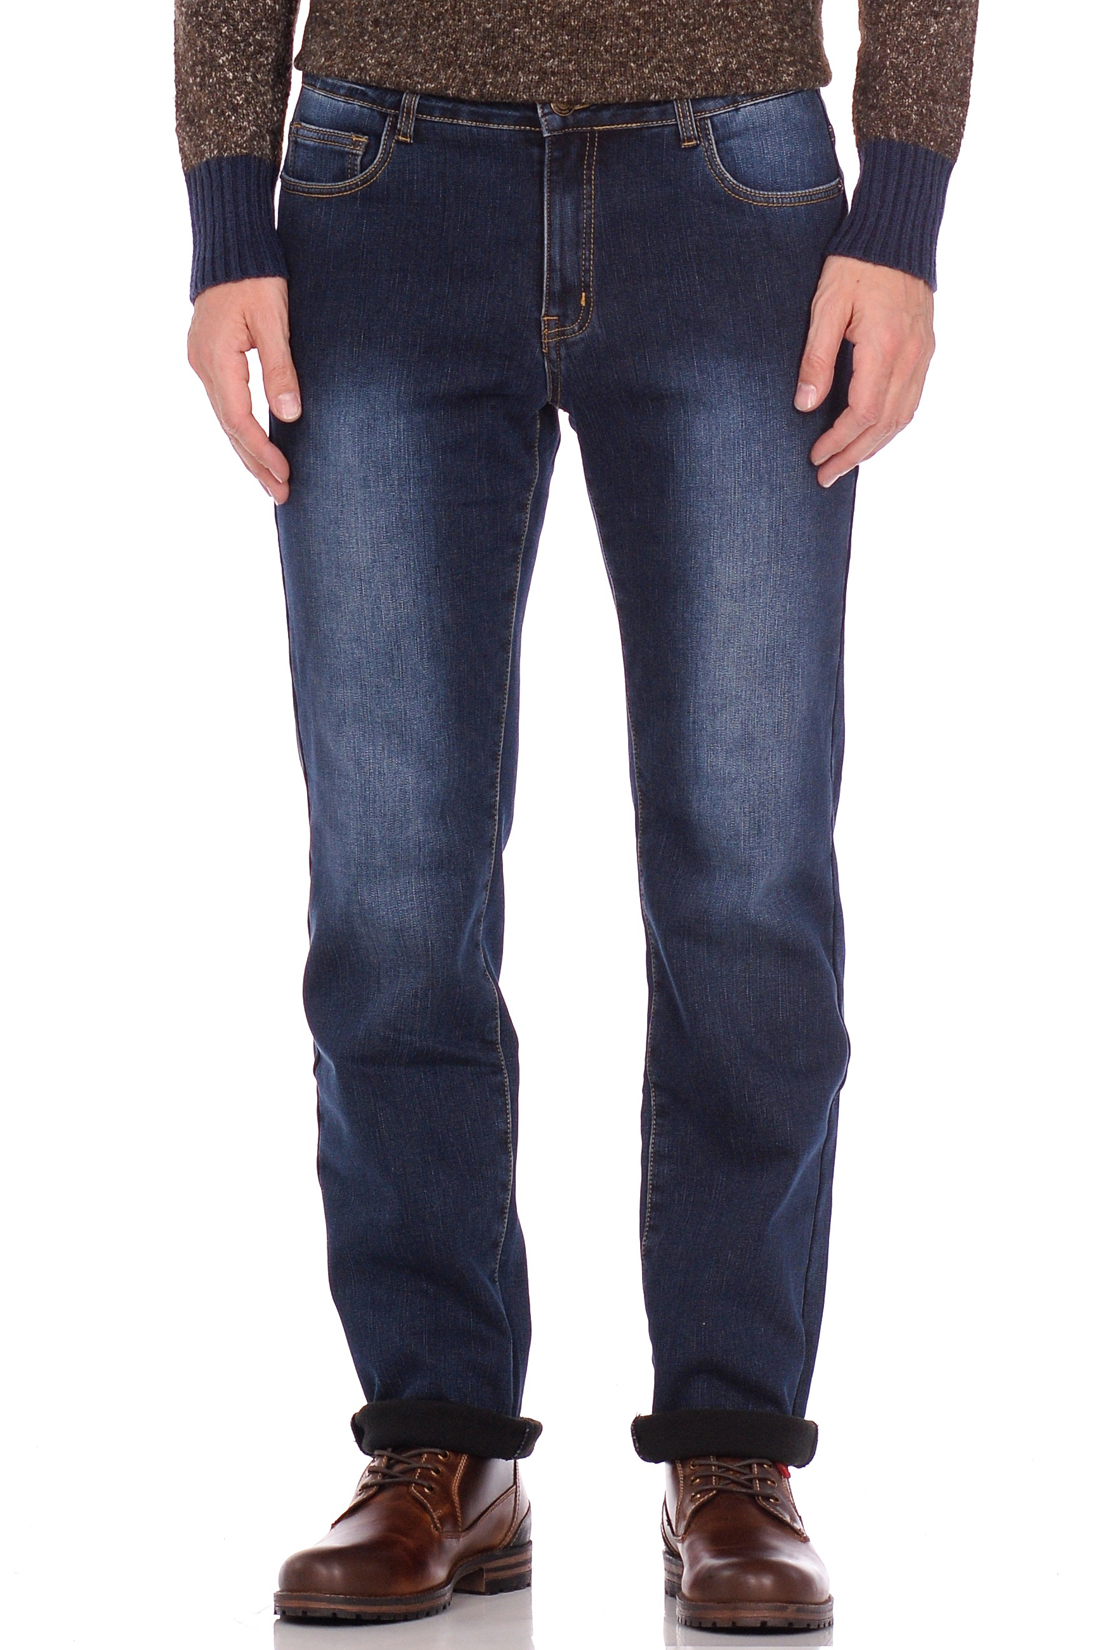 Утеплённые джинсы (арт. baon B808510), размер 42, цвет blue denim#голубой Утеплённые джинсы (арт. baon B808510) - фото 1